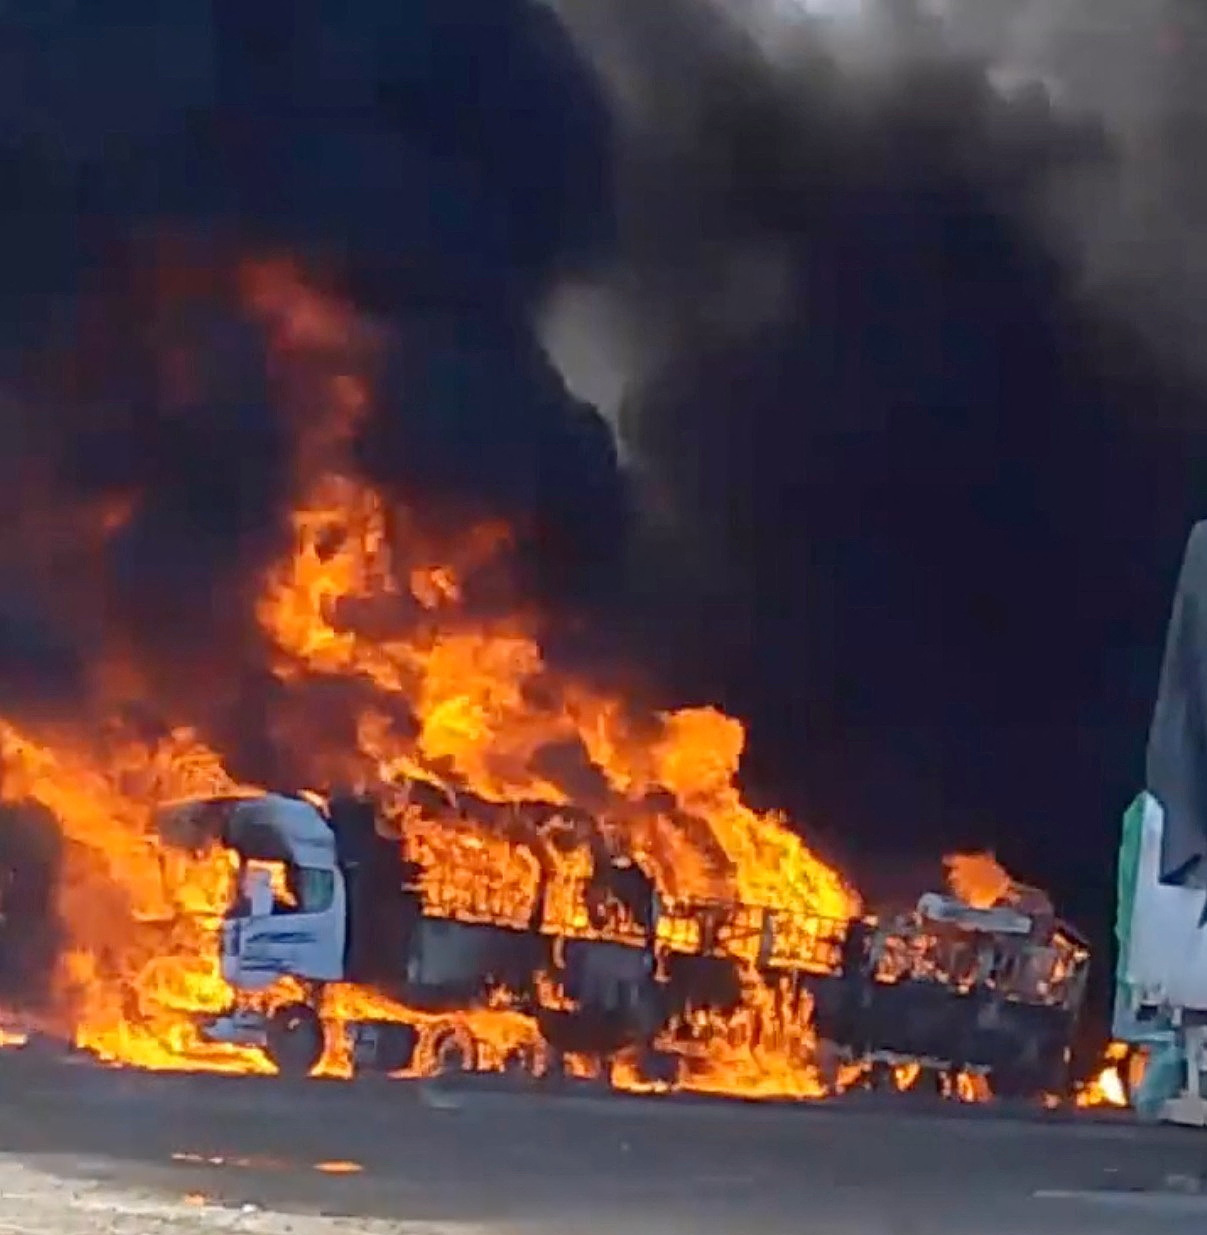 Xe tải bị đốt cháy tại cửa khẩu Kyinsankyawt thuộc bang Shan, khu vực biên giới Myanmar - Trung Quốc ngày 23/11. Ảnh: Reuters